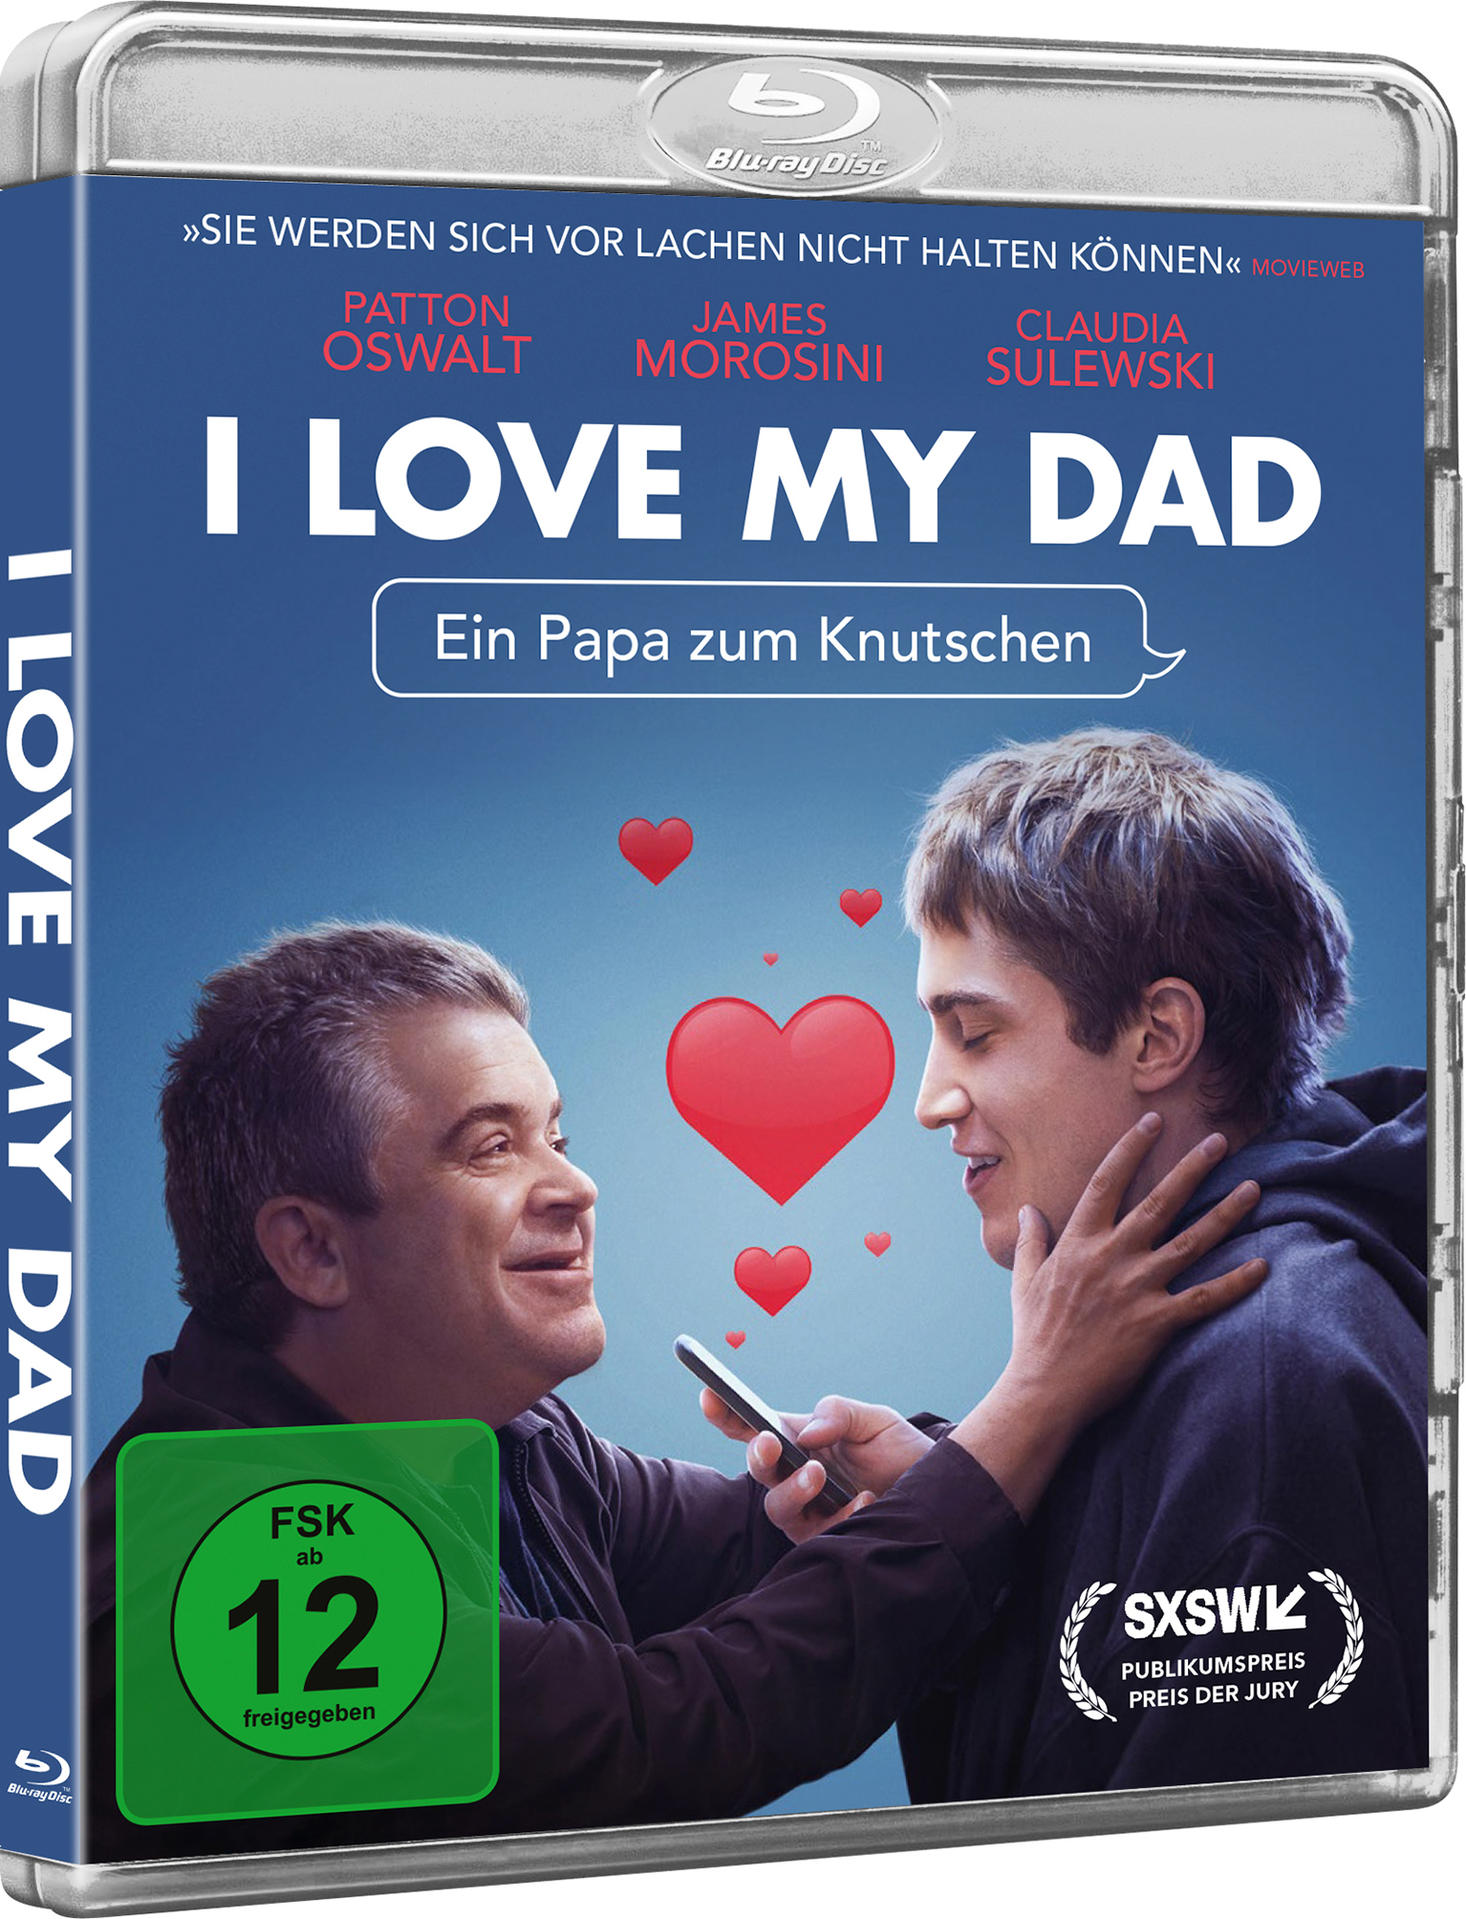 zum Papa My Dad Love Knutschen - Ein Blu-ray I